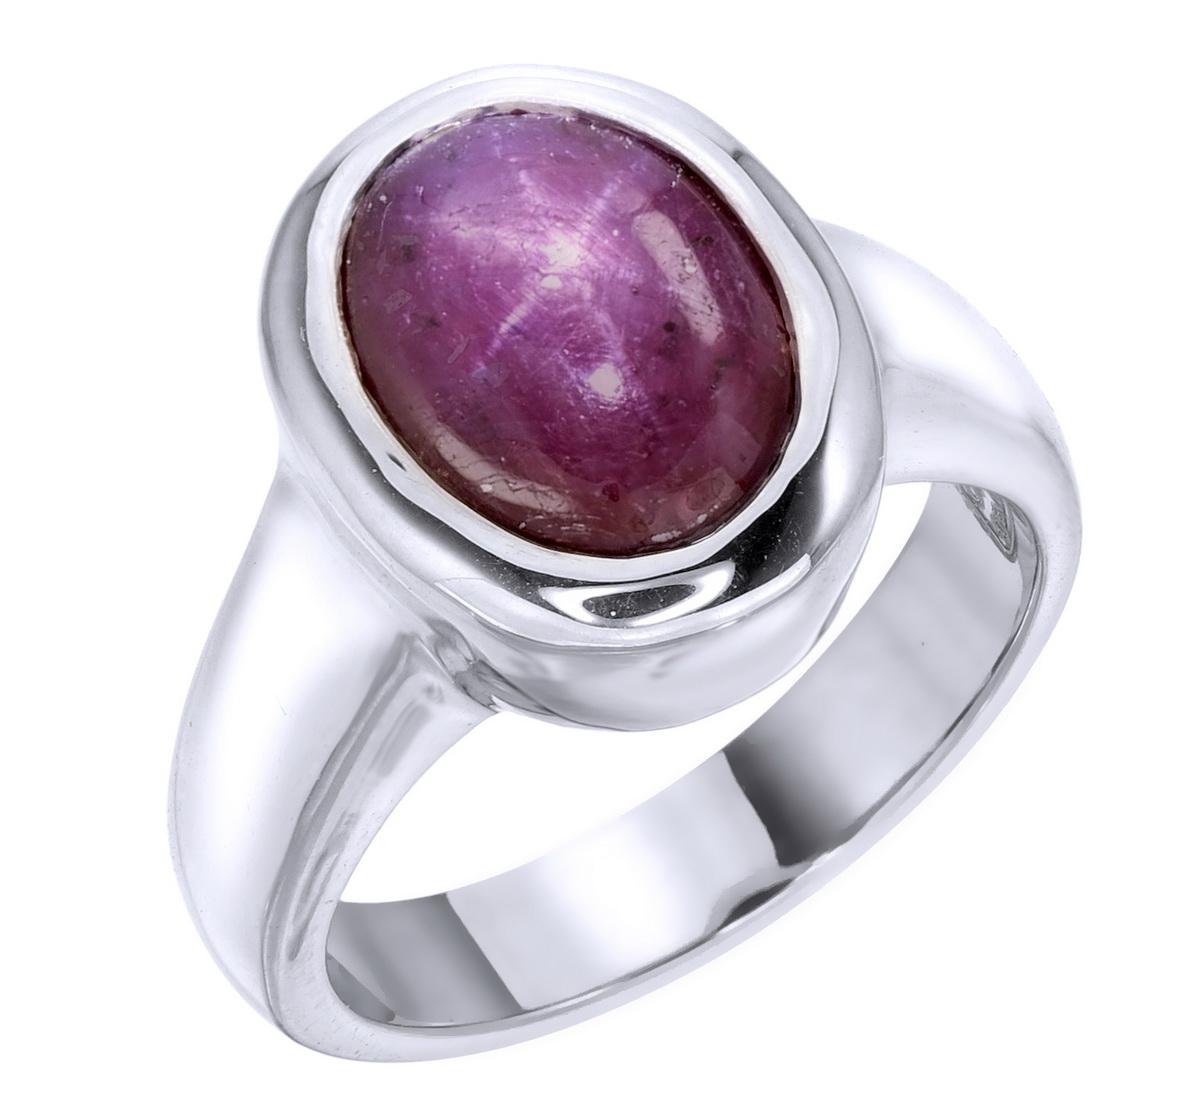 Orloff of Denmark; 8.52 Karat Sternrubin Silberring.

Dieser Ring ist Teil eines dreiteiligen Sets mit atemberaubenden Rubinen, die mit einem außergewöhnlichen Sterneffekt versehen sind. 
Das sternförmige Phänomen, das als 